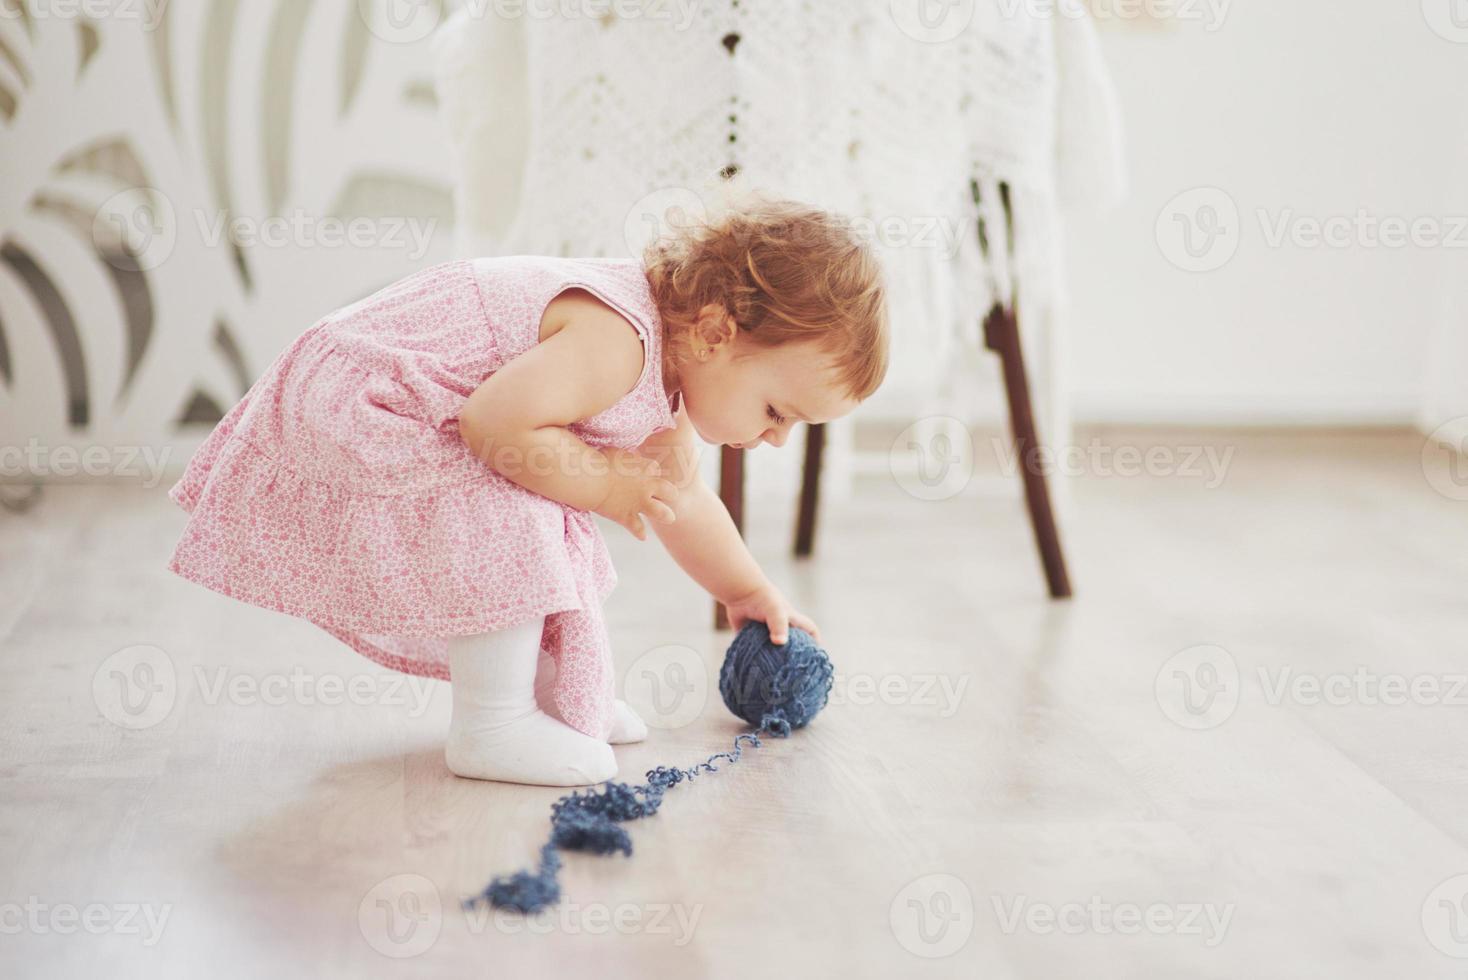 notion d'enfance. petite fille en robe mignonne joue avec du fil coloré. chambre d'enfant vintage blanche photo